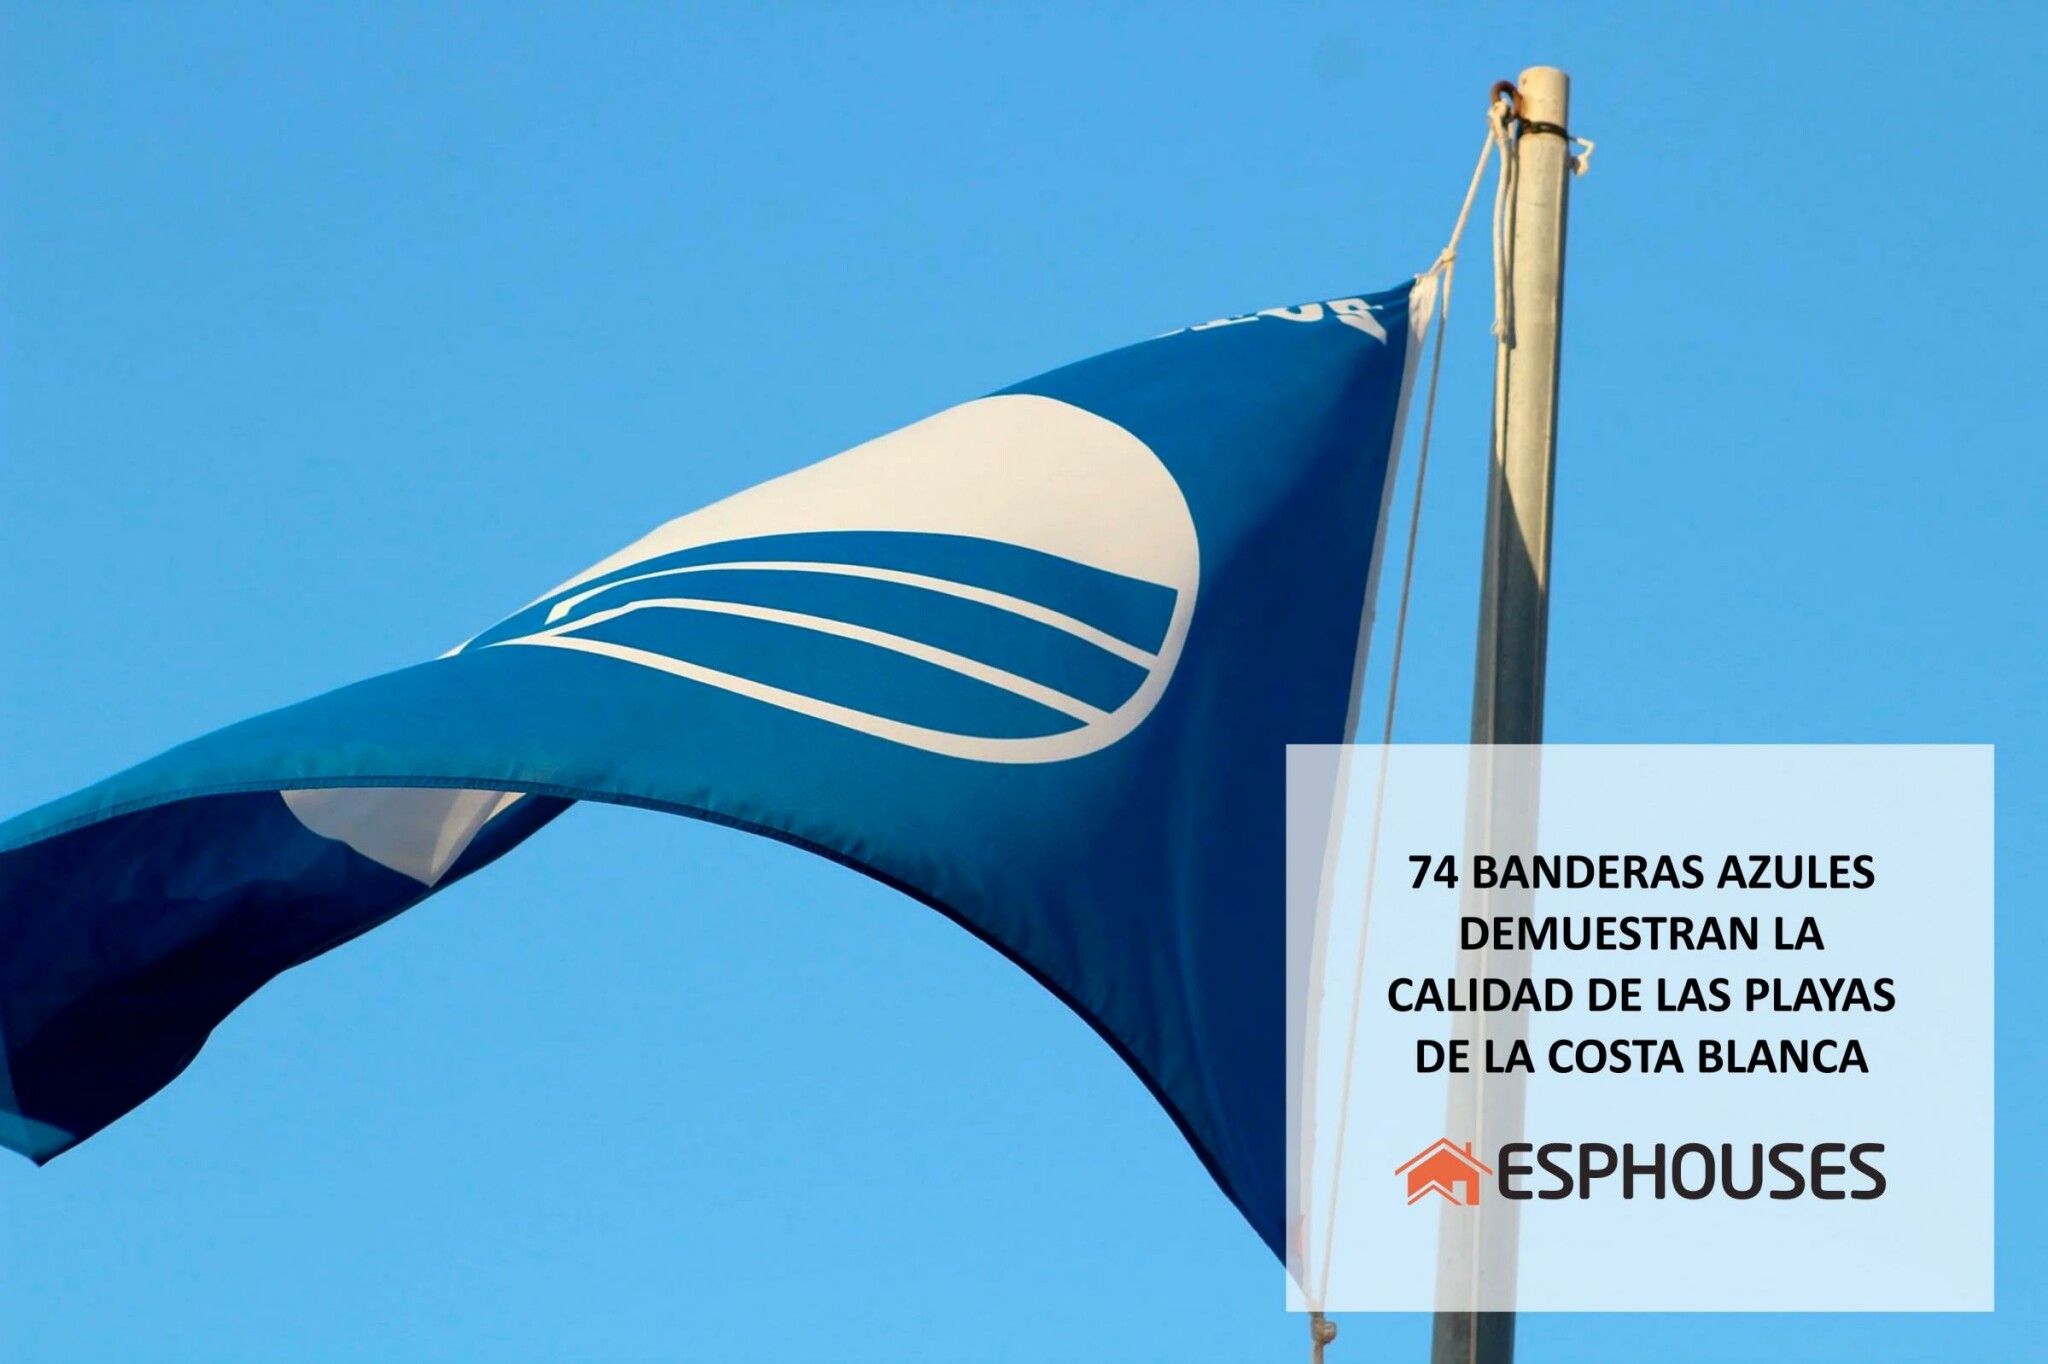 74 banderas azules demuestran la alta calidad de las playas de la Costa Blanca en 2021